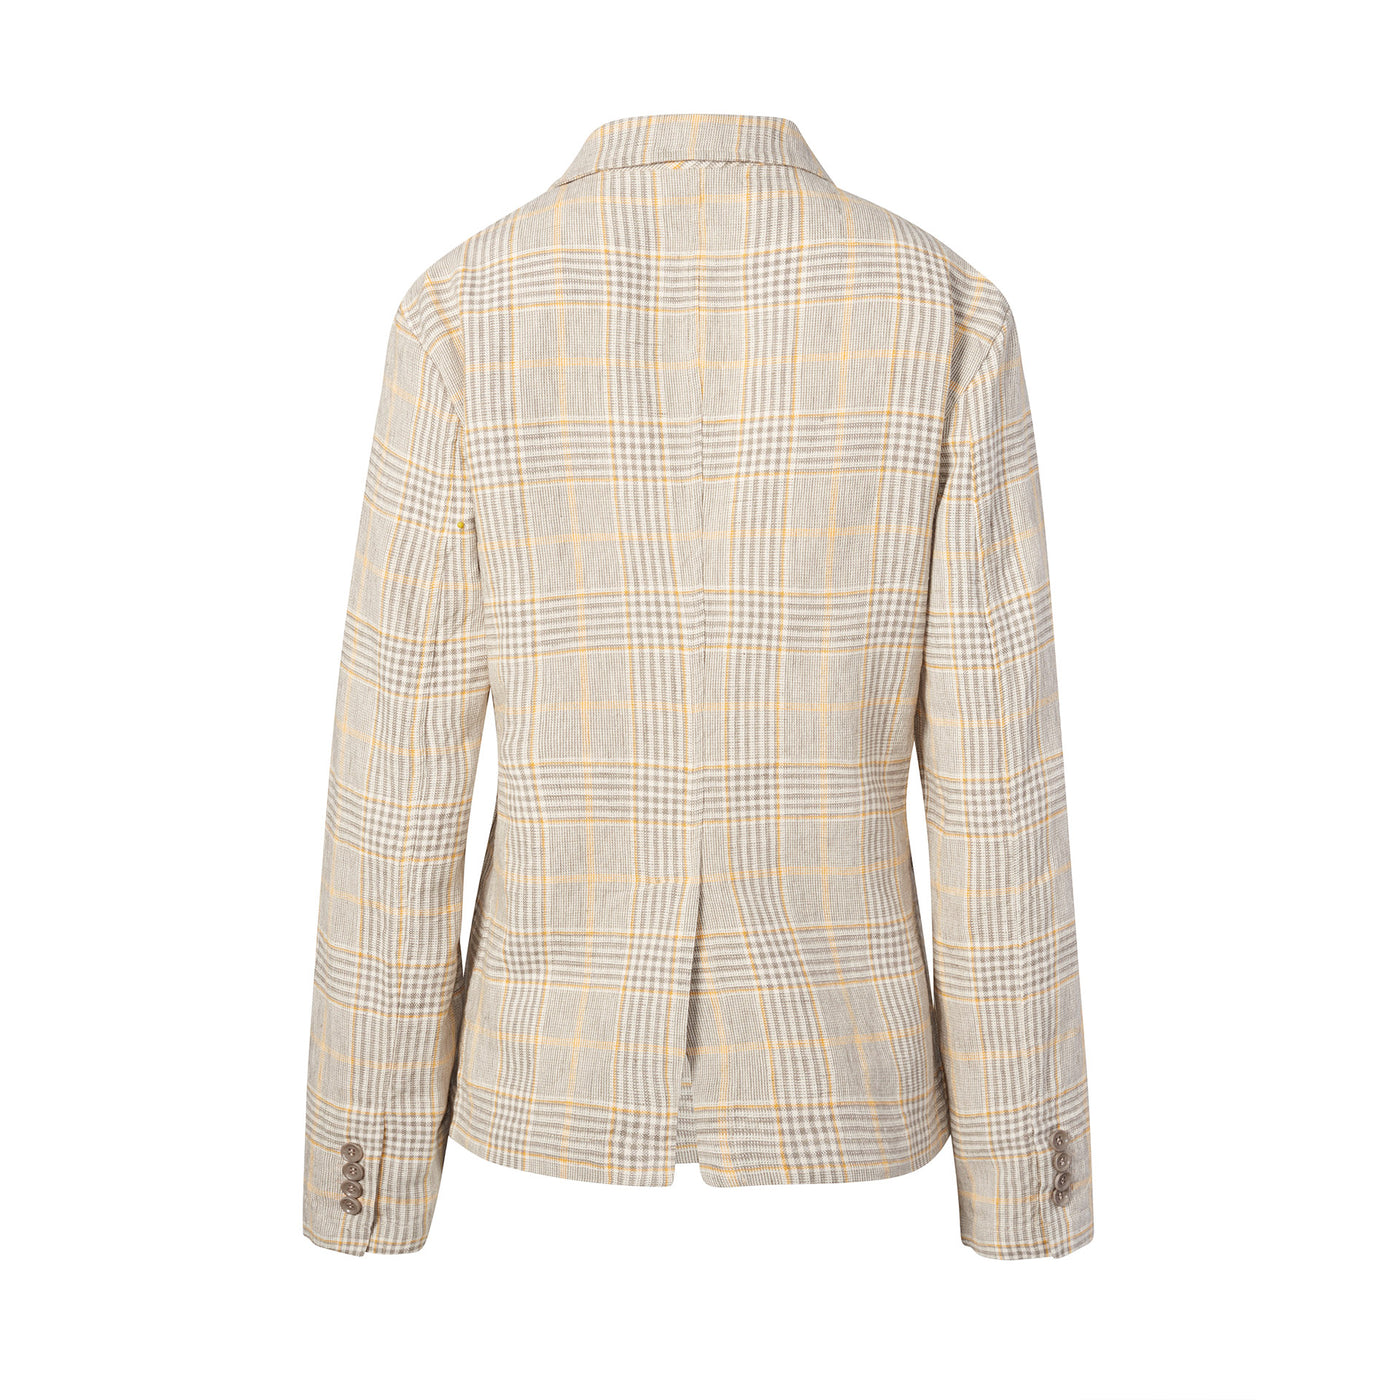 Women's Cotton & Linen Check Jacket - Beige Check